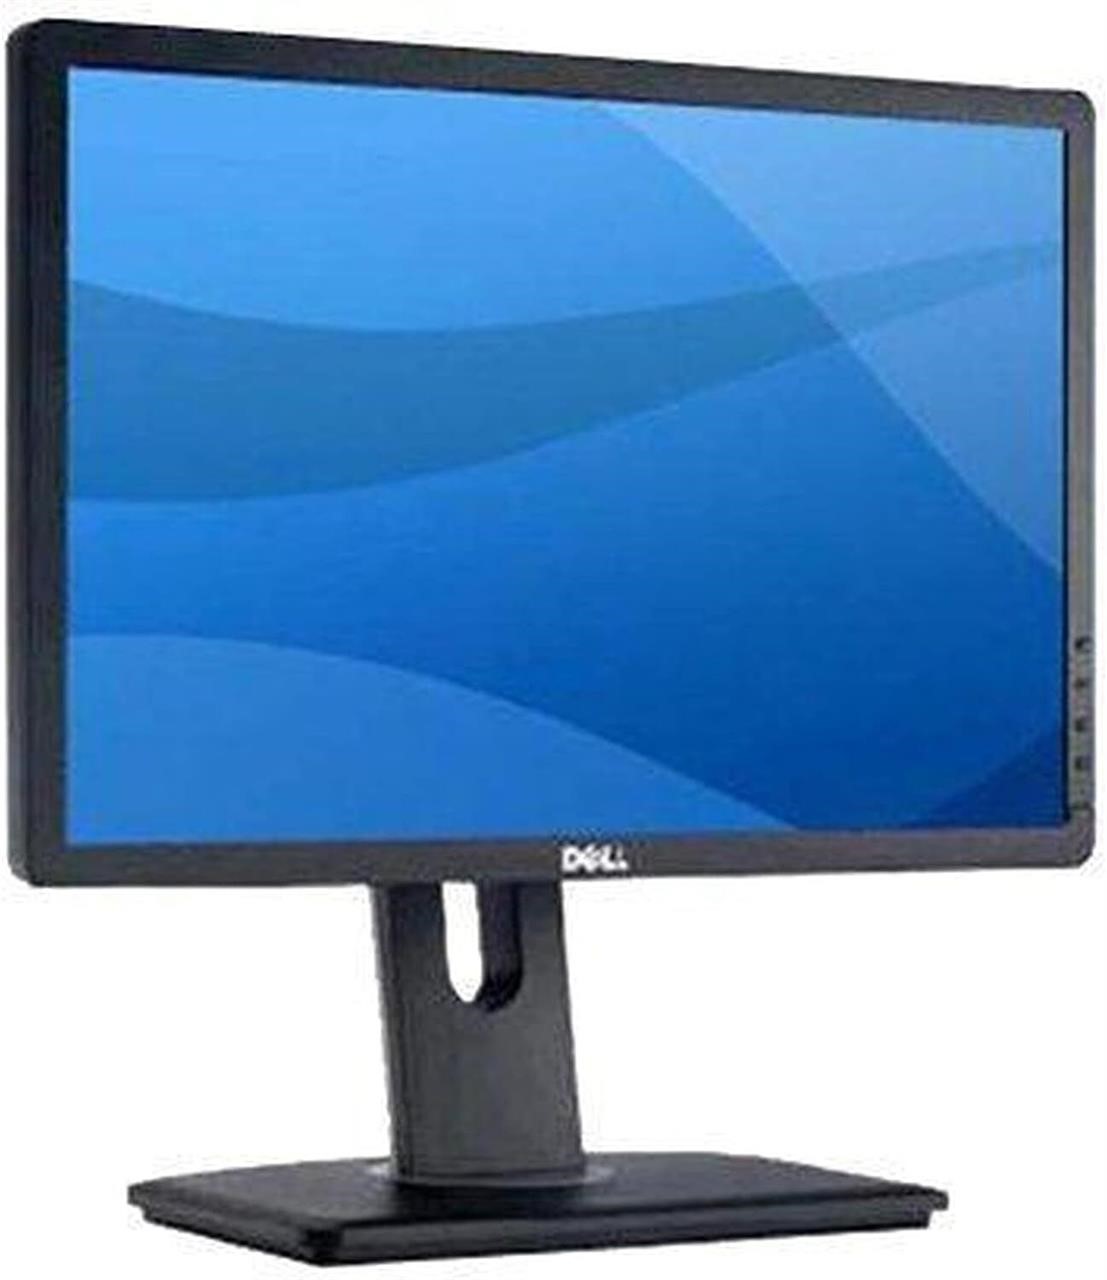 Dell Pro P1913 19 PLHD Widescreen Monitor